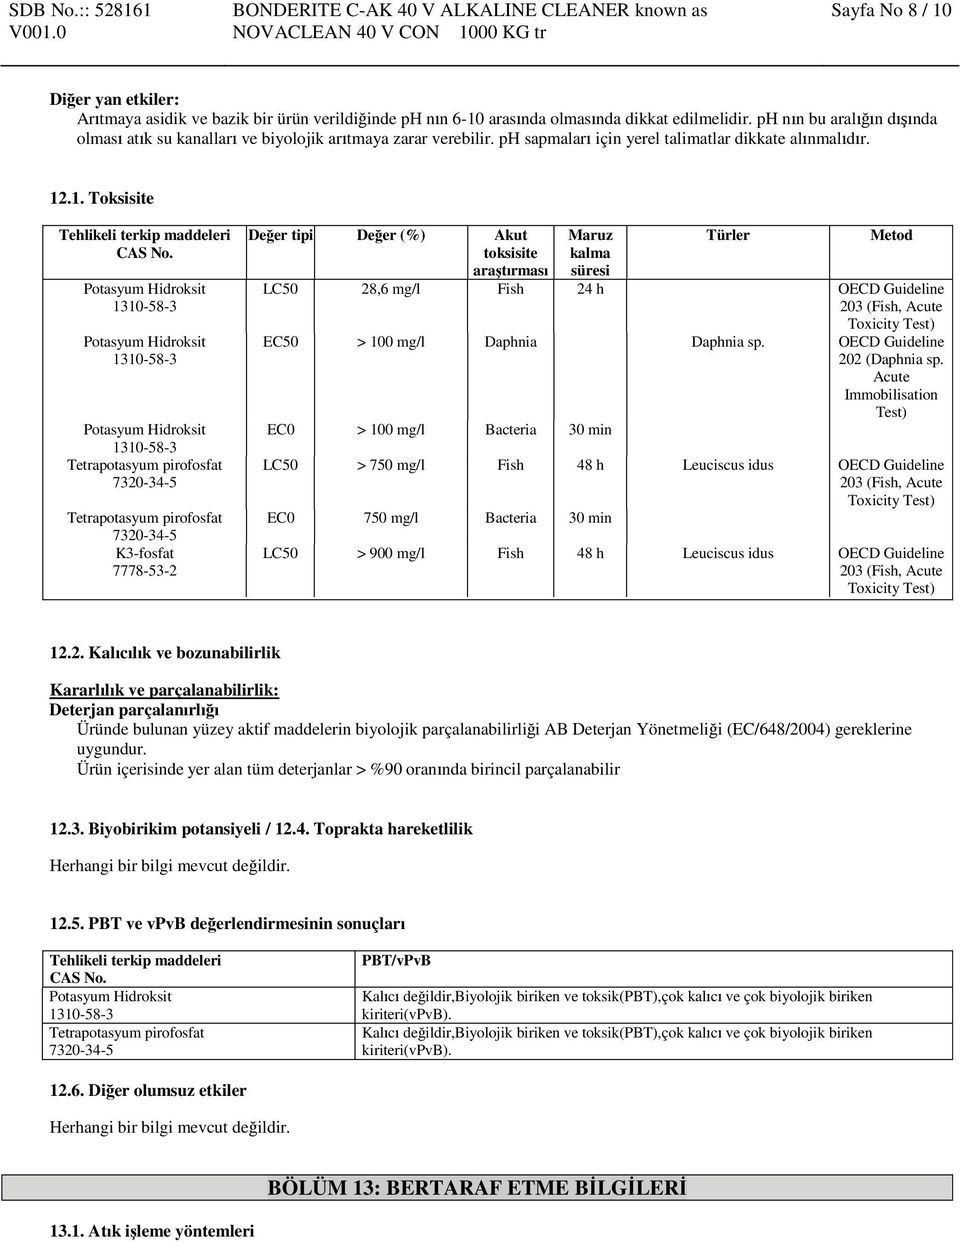 .1. Toksisite Tehlikeli terkip maddeleri K3-fosfat 7778-53-2 Değer tipi Değer (%) Akut toksisite araştırması Maruz kalma süresi Türler Metod LC50 28,6 mg/l Fish 24 h OECD Guideline 203 (Fish, Acute